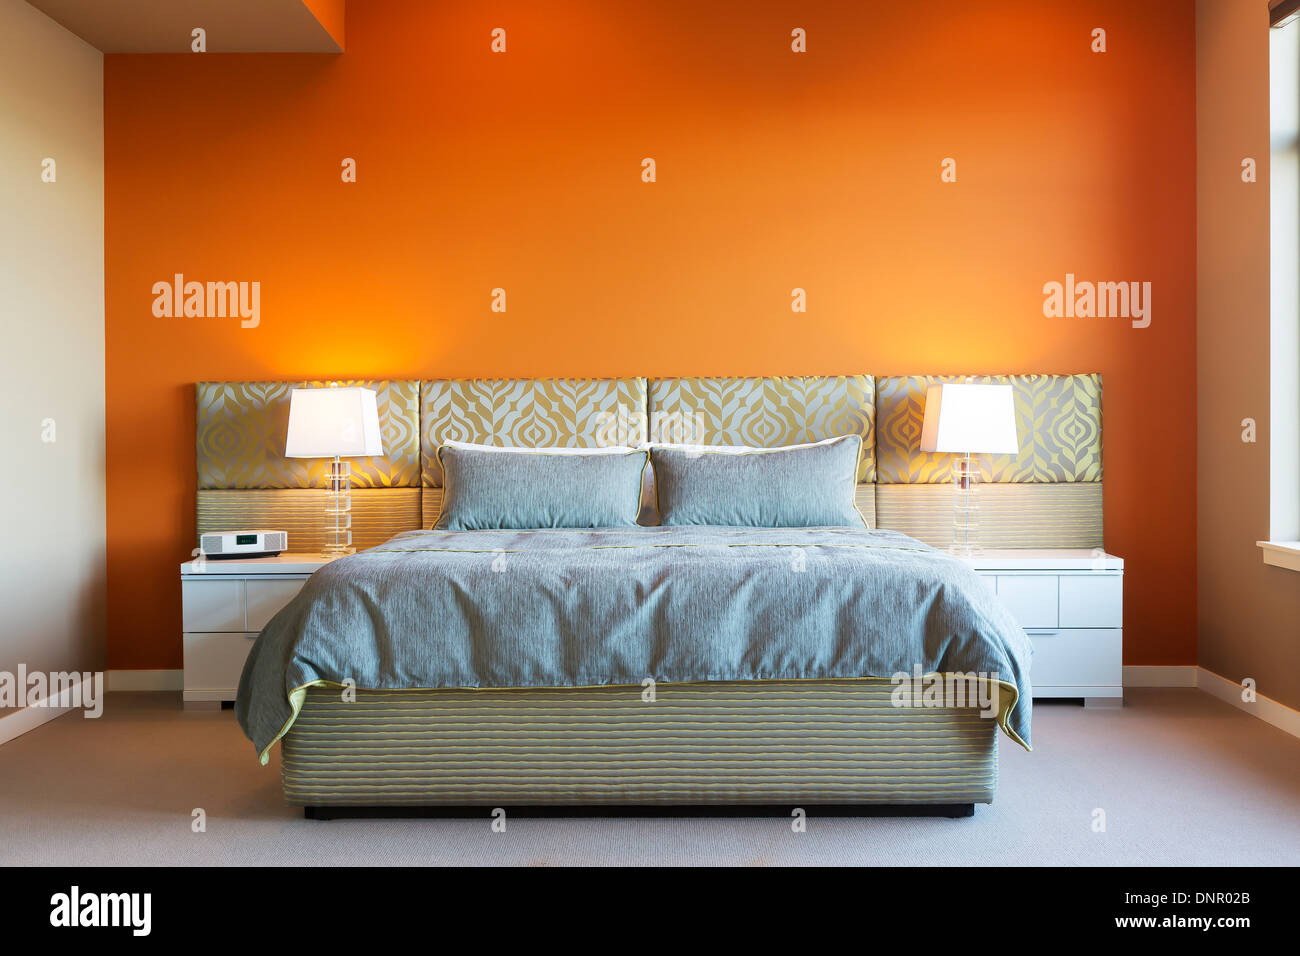 Chambre de maître de style moderne avec des couleurs vives et des meubles sur mesure Banque D'Images